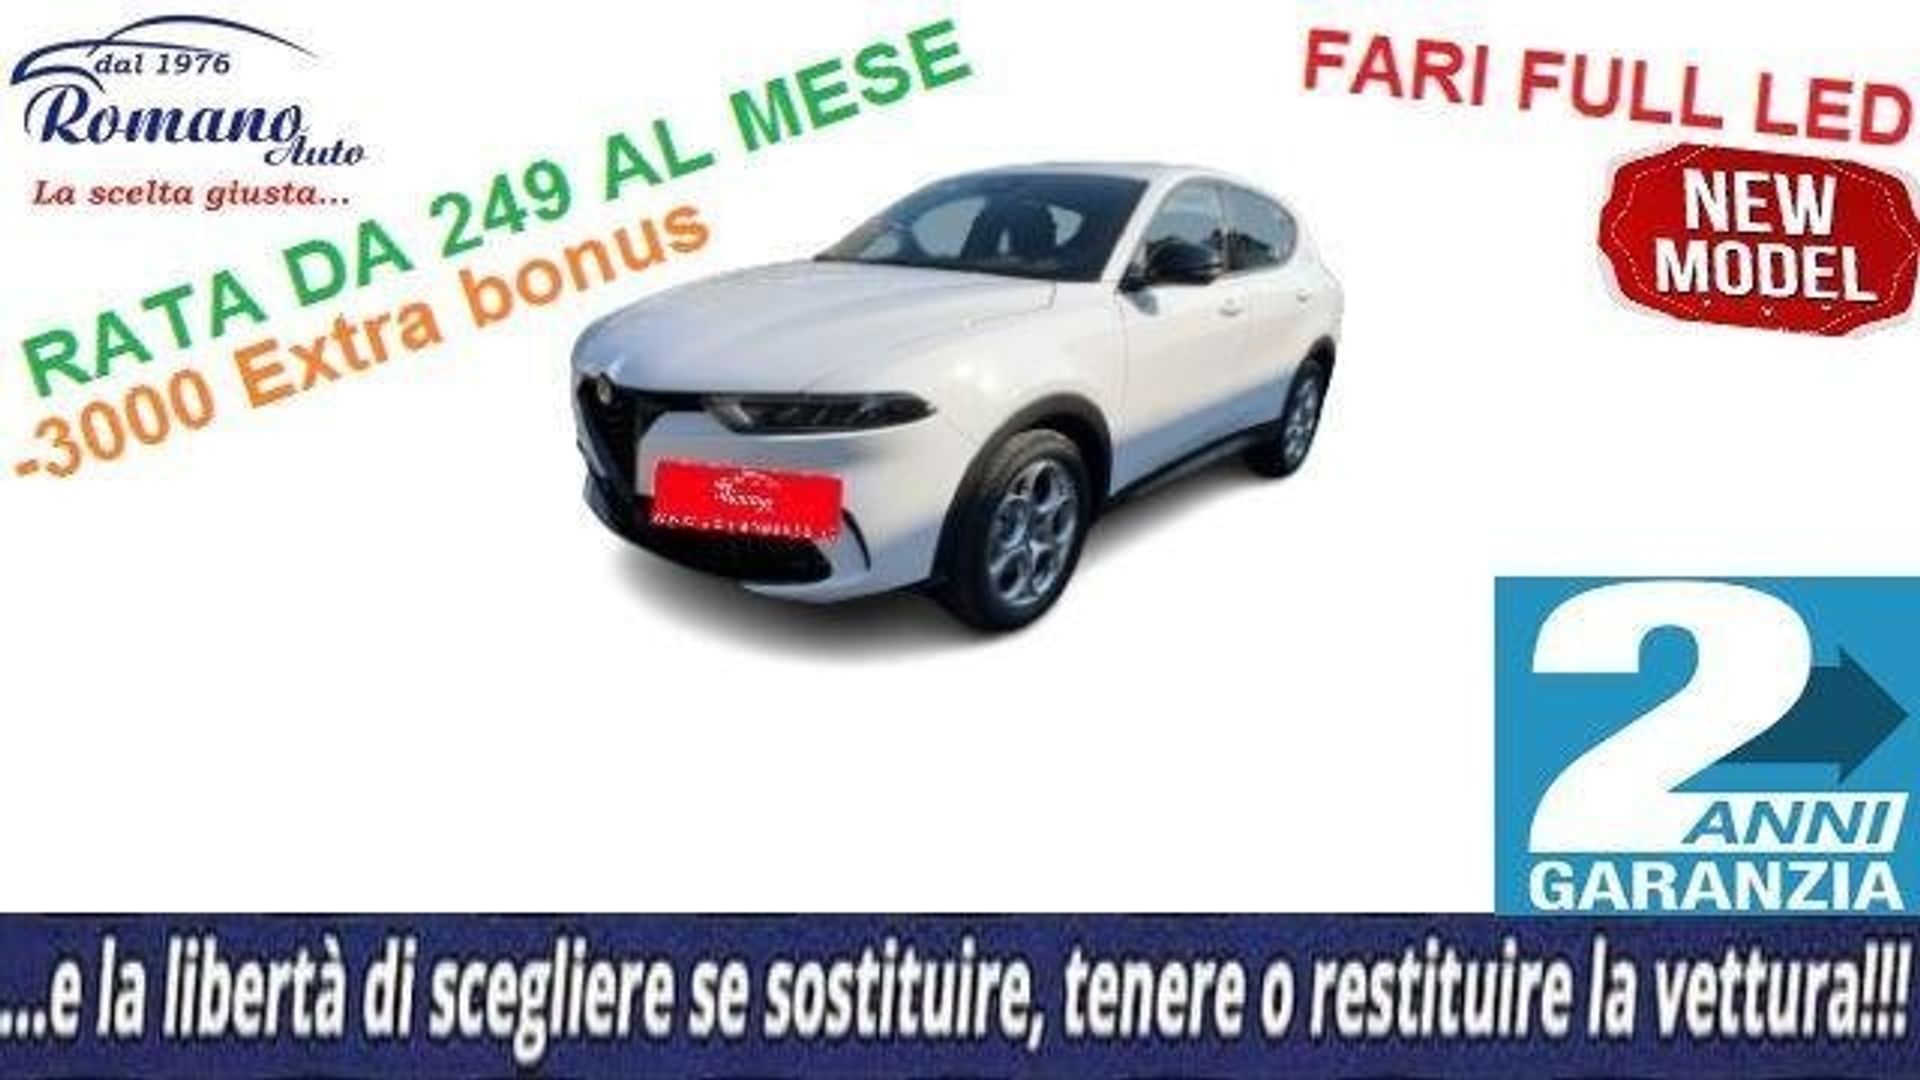 Alfa romeo Tonale 1.6 diesel 130 CV